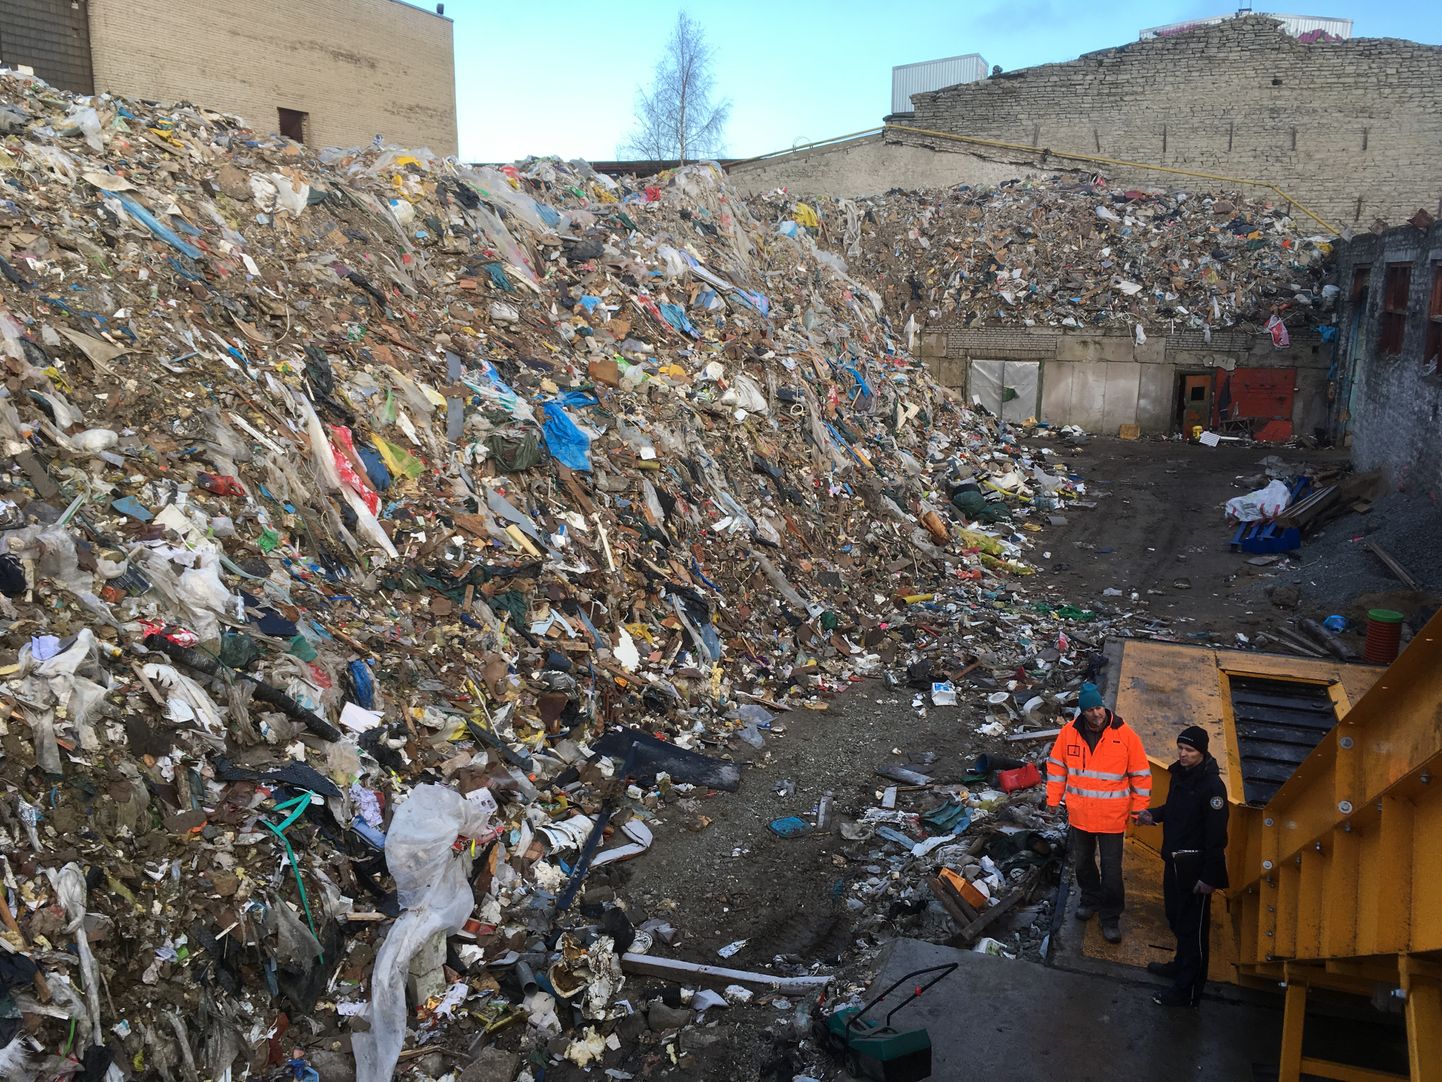 Pildil oleva jäätmekäitluskoha suhtes on käimas menetlus. Inspektor kontrollib, et järgitaks ettenähtud nõudeid, eeskätt jäätmekoguseid.